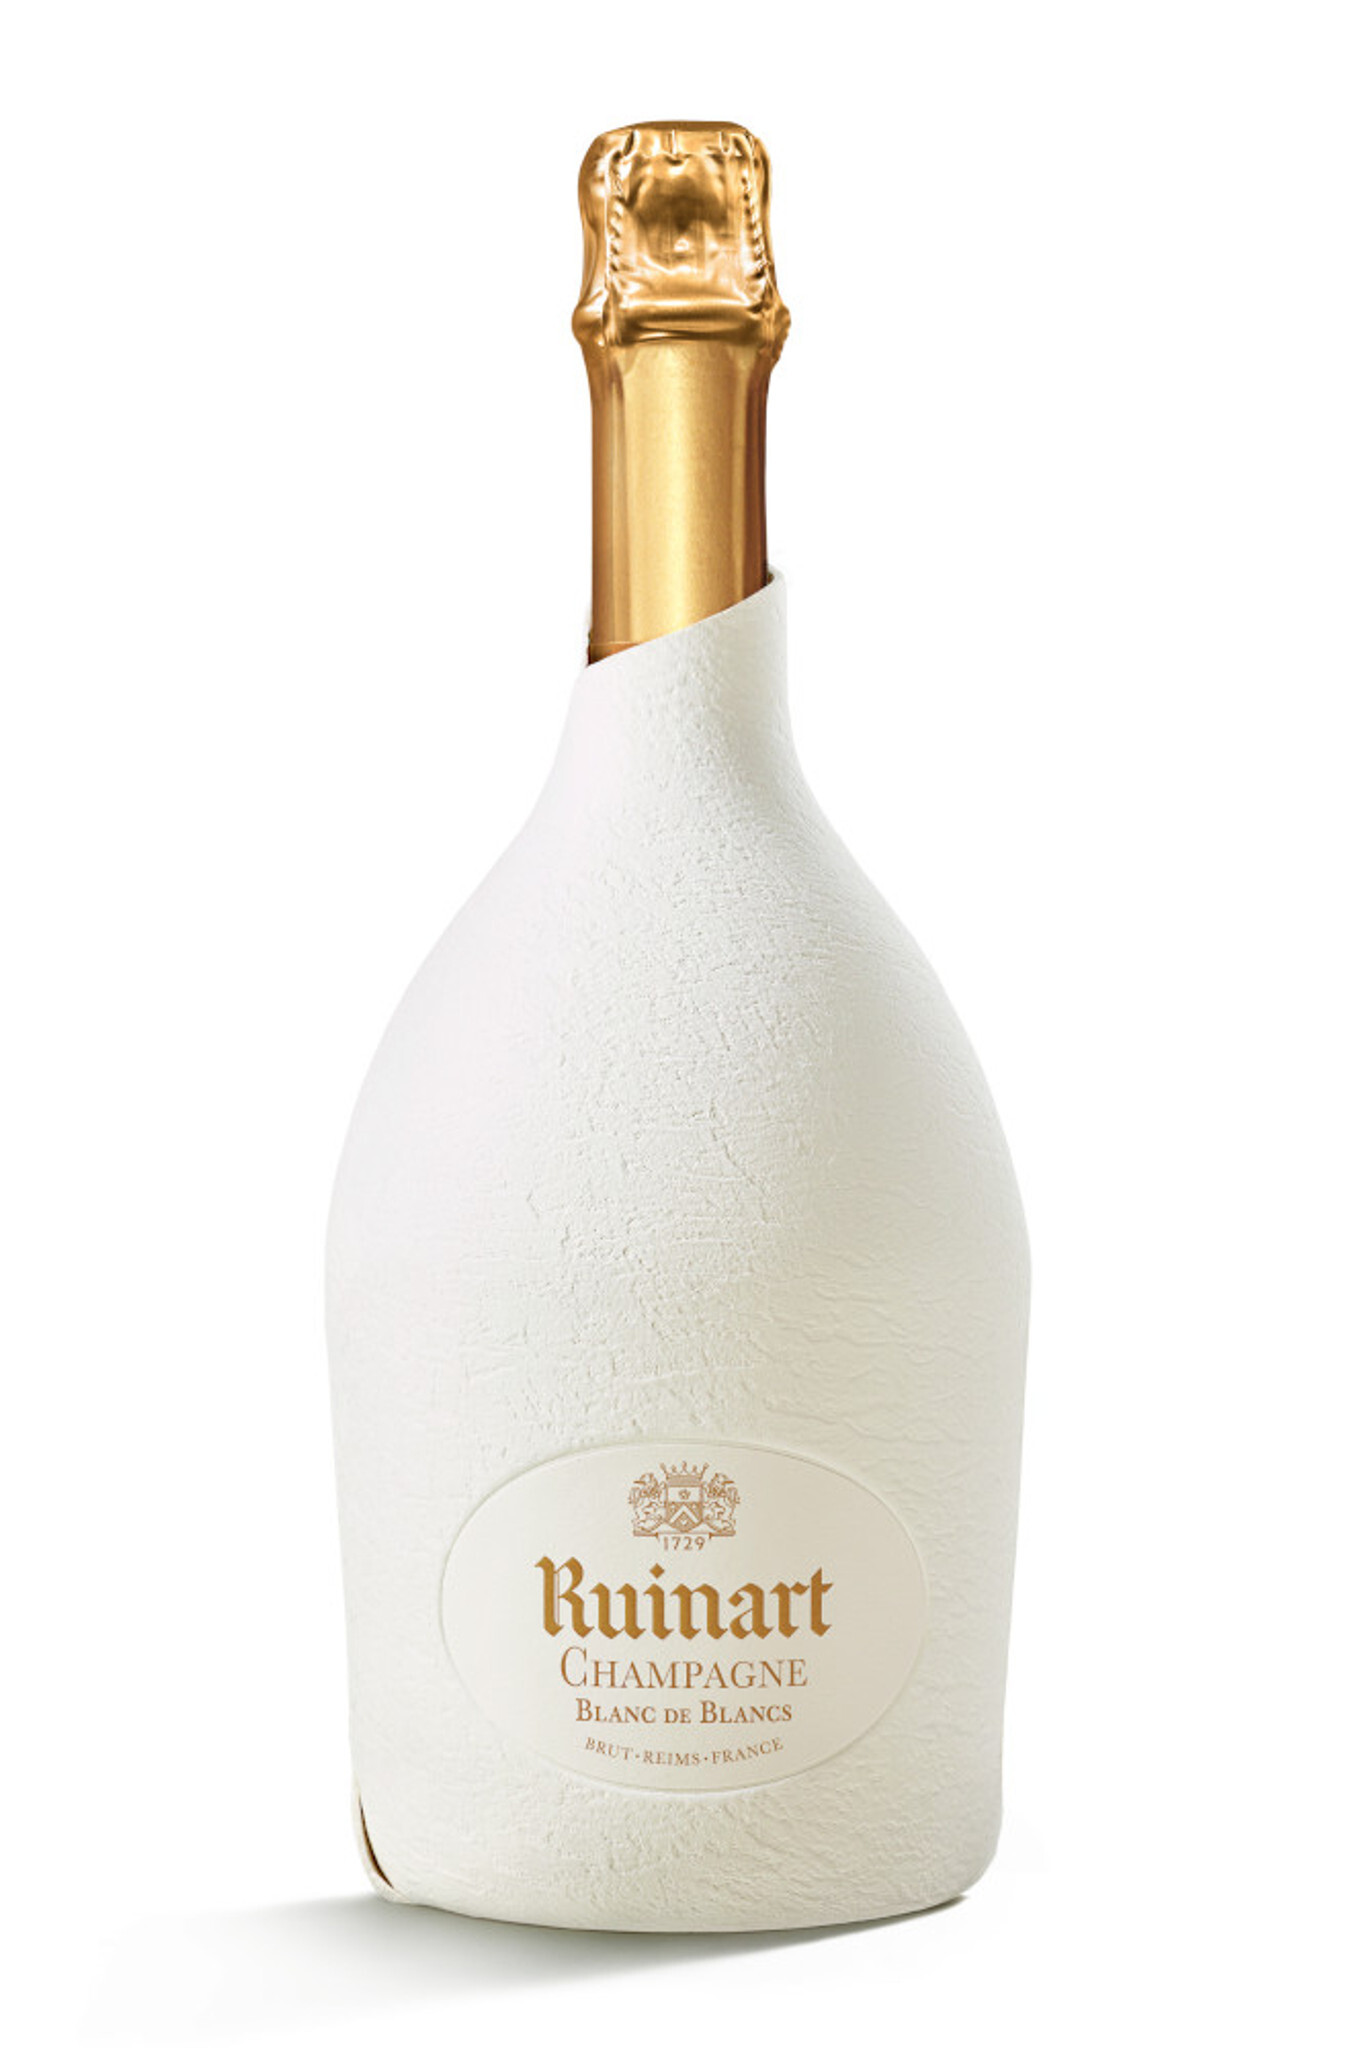 Champagne Ruinart Blanc de Blancs 1,5L Brut Magnumfles Neoprene Jacket